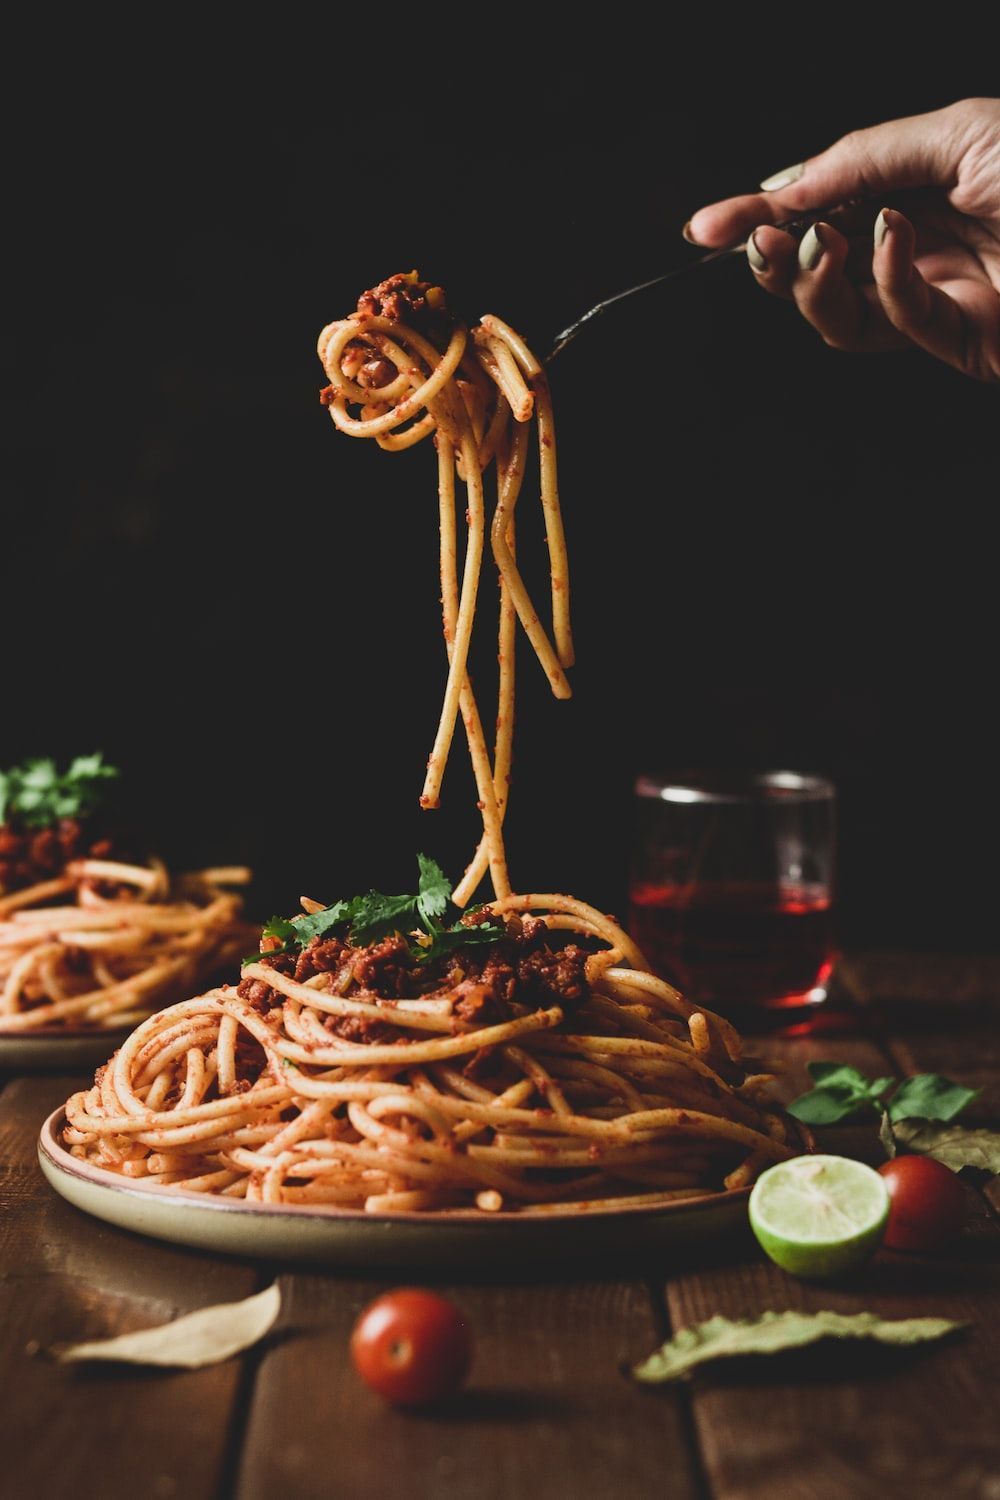 Spaghetti Picture. Download Free Image